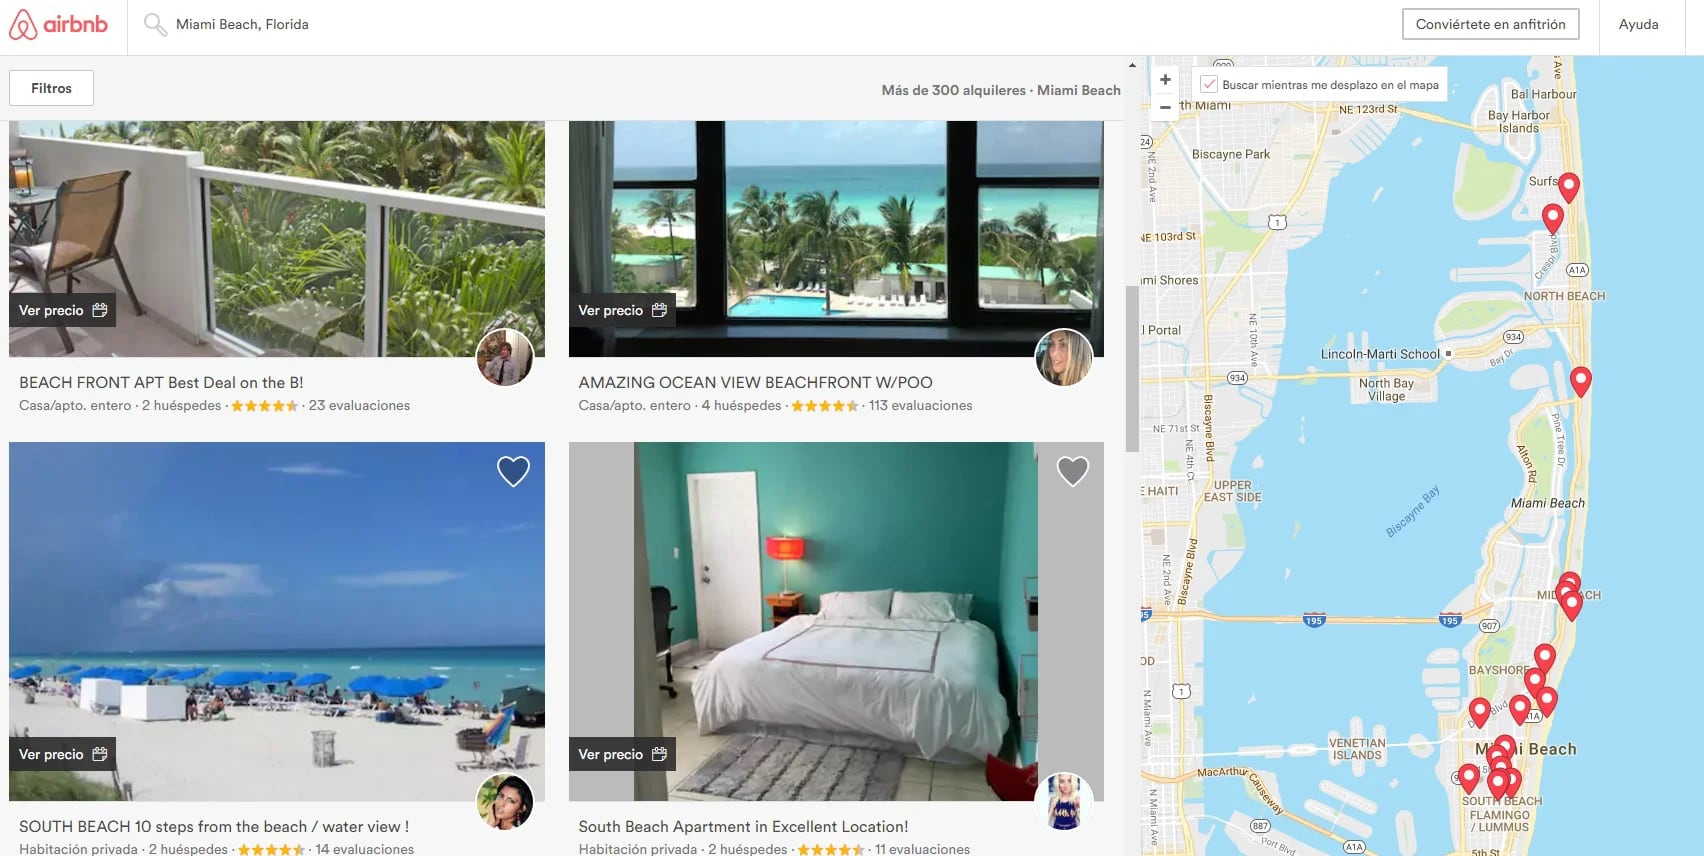 Ofertas de alojamiento en Miami Beach de Airbnb